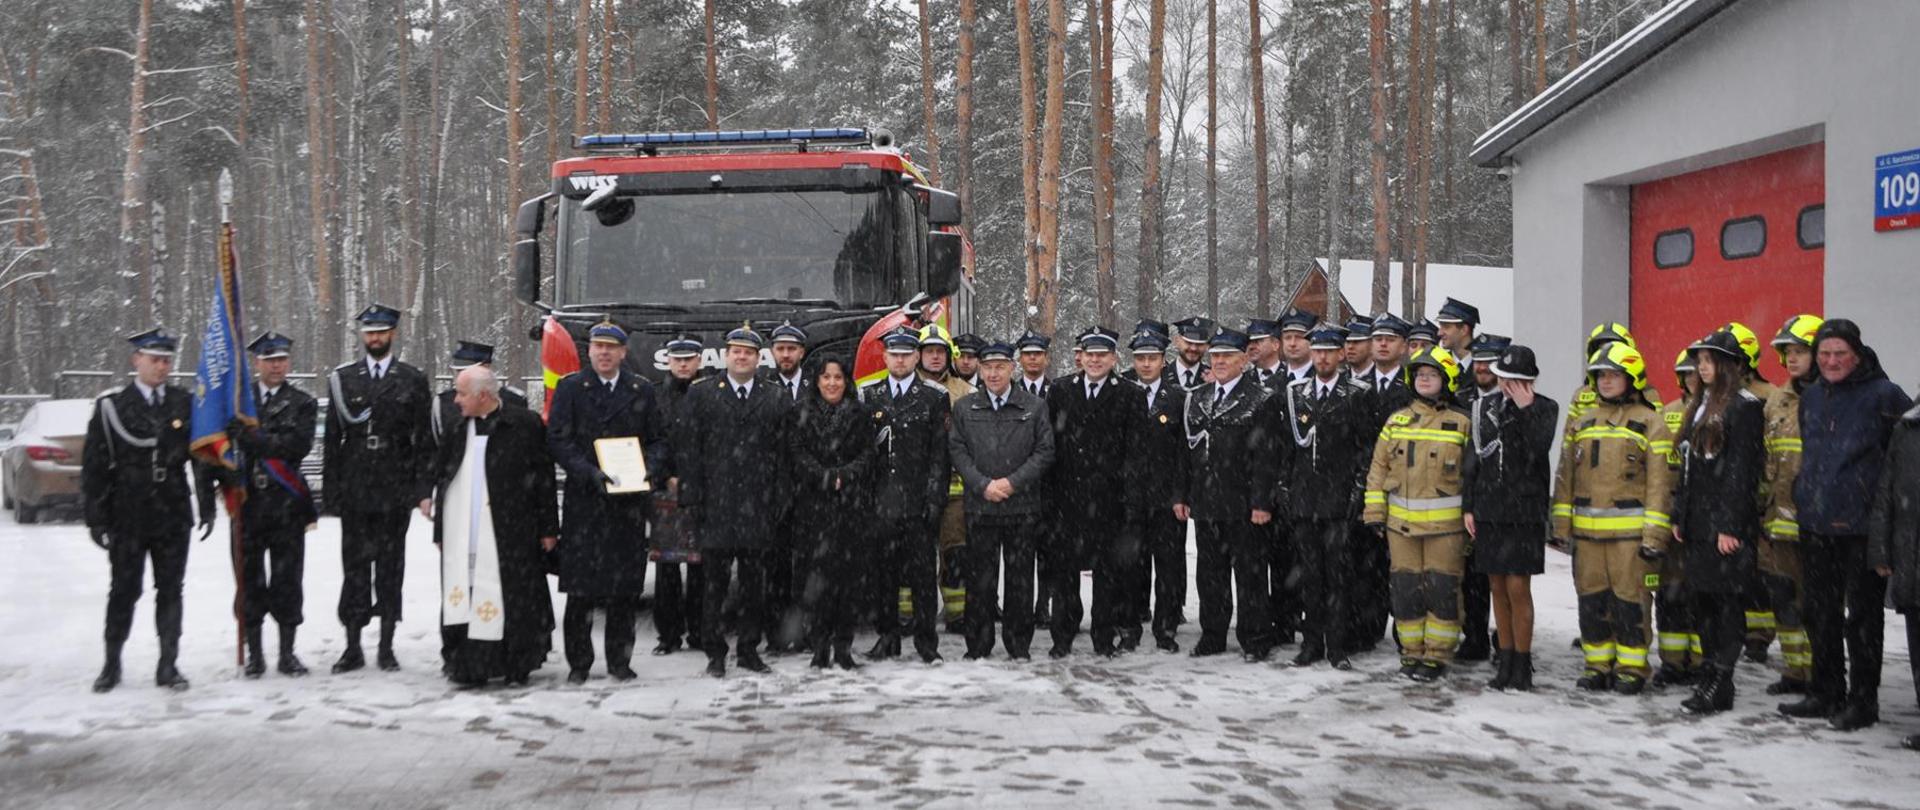 Na zdjęciu na tle pojazdu pożarniczego zaproszeni goście oraz druhowie OSP. Uroczystość odbywa się z okazji przekazania pojazdu gaśniczego dla OSP Otwock Jabłonna